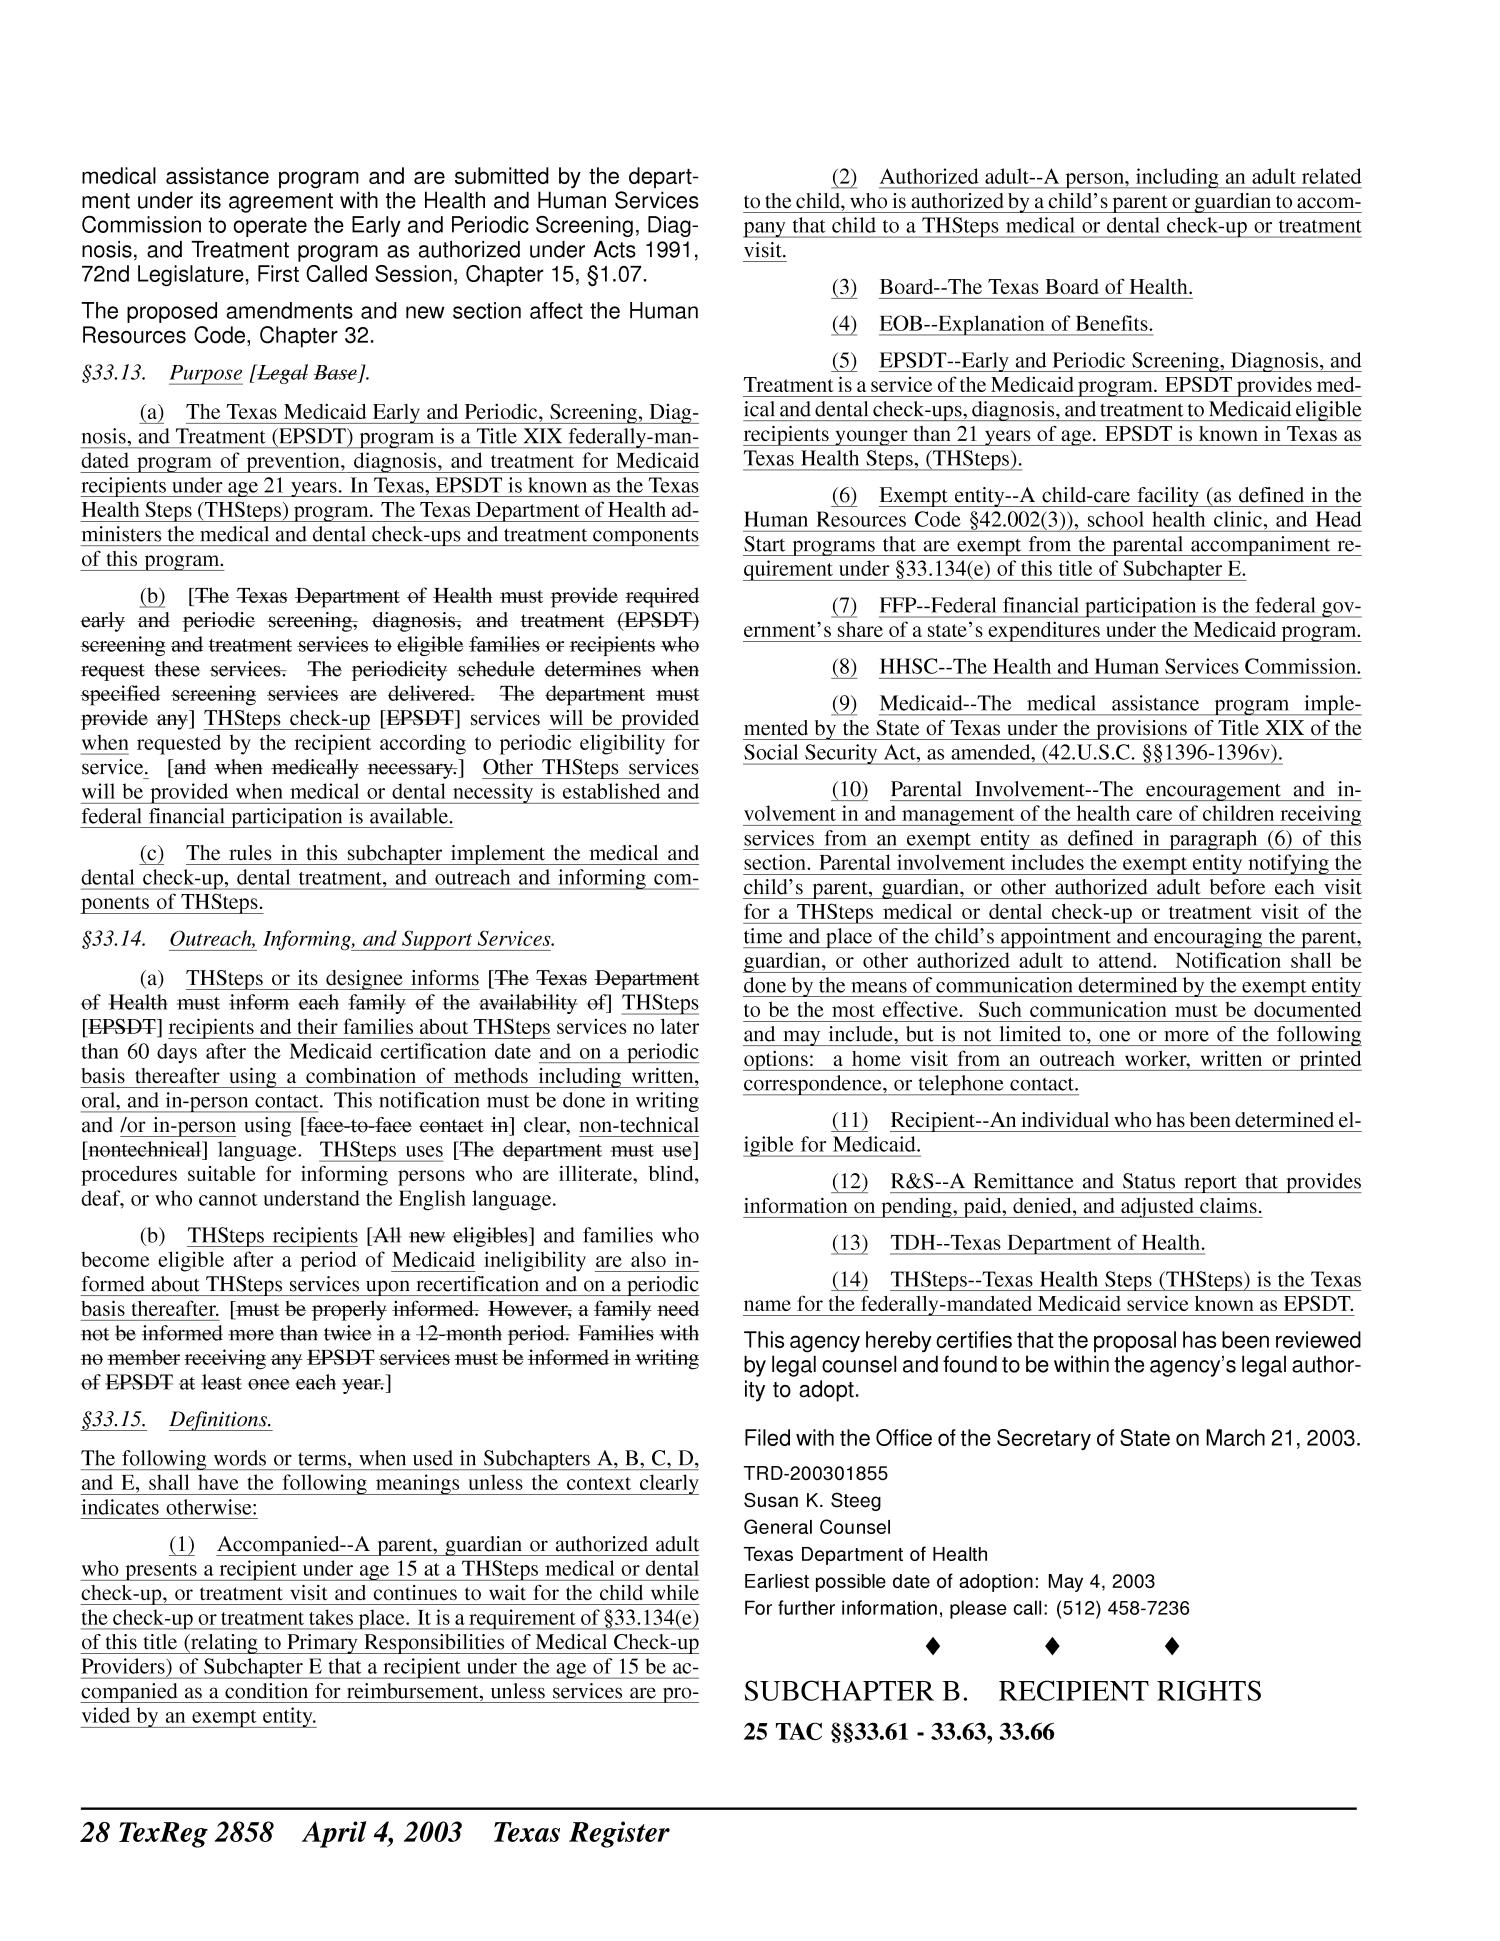 Texas Register, Volume 28, Number 14, Pages 2821-2988, April 4, 2003
                                                
                                                    2858
                                                